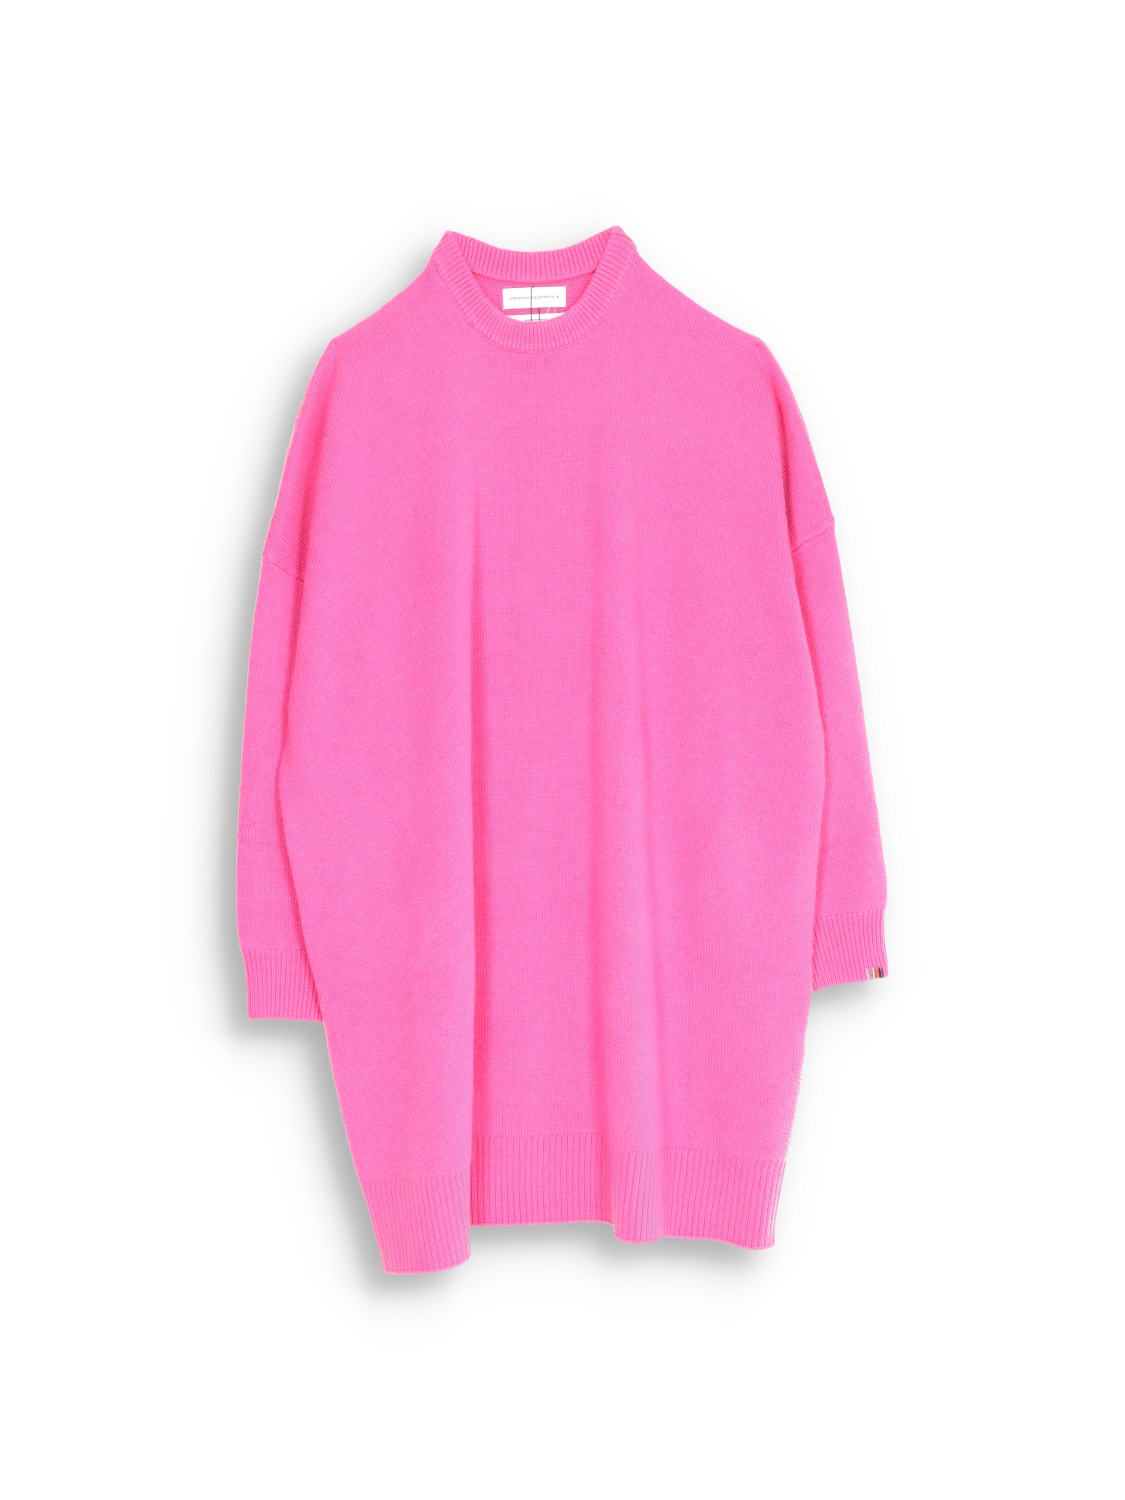 303 Sandra - Oversized cashmere sweater dress